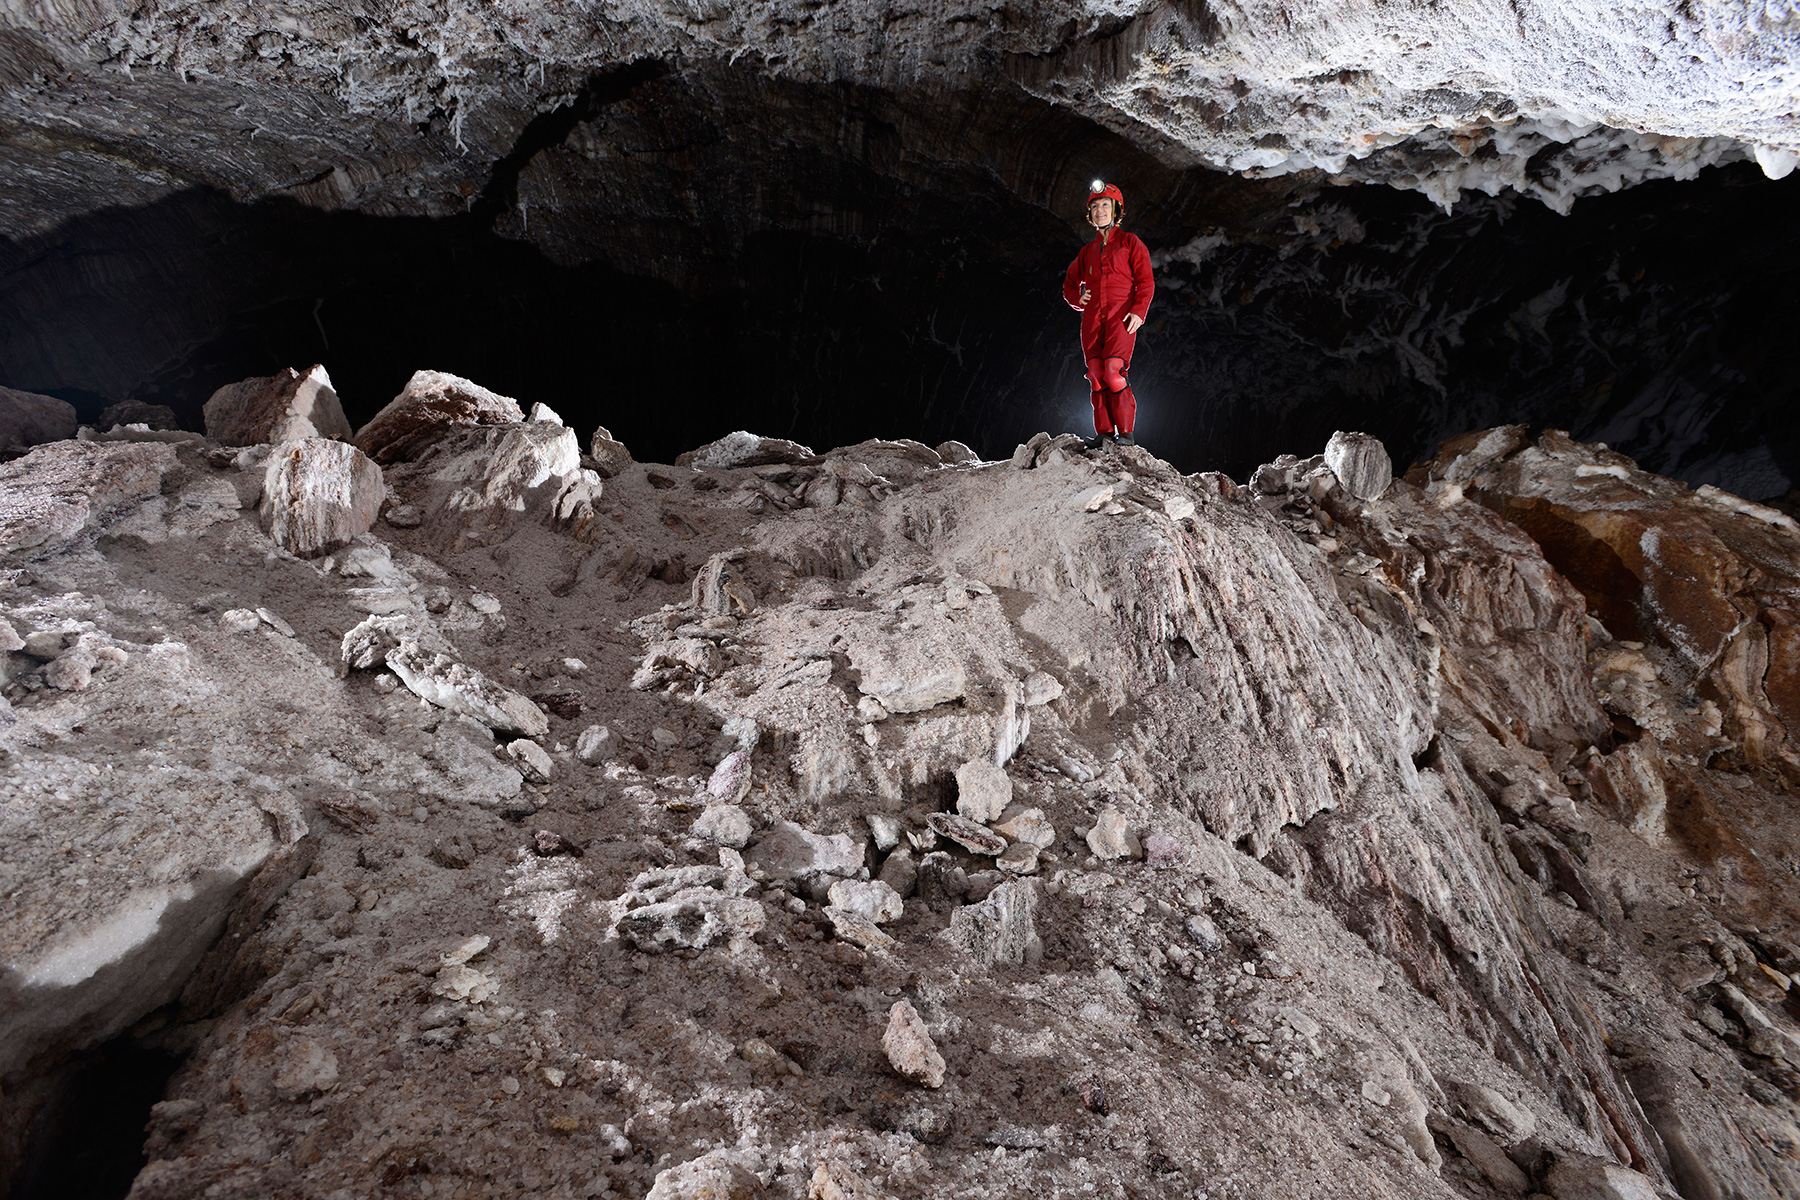 3N Cave(Namakdan, Qeshm, Iran) - "Cône d'éboulis" lié aux effondrements du plafond de la première salle. Le sel se désagrège en gros cristaux 